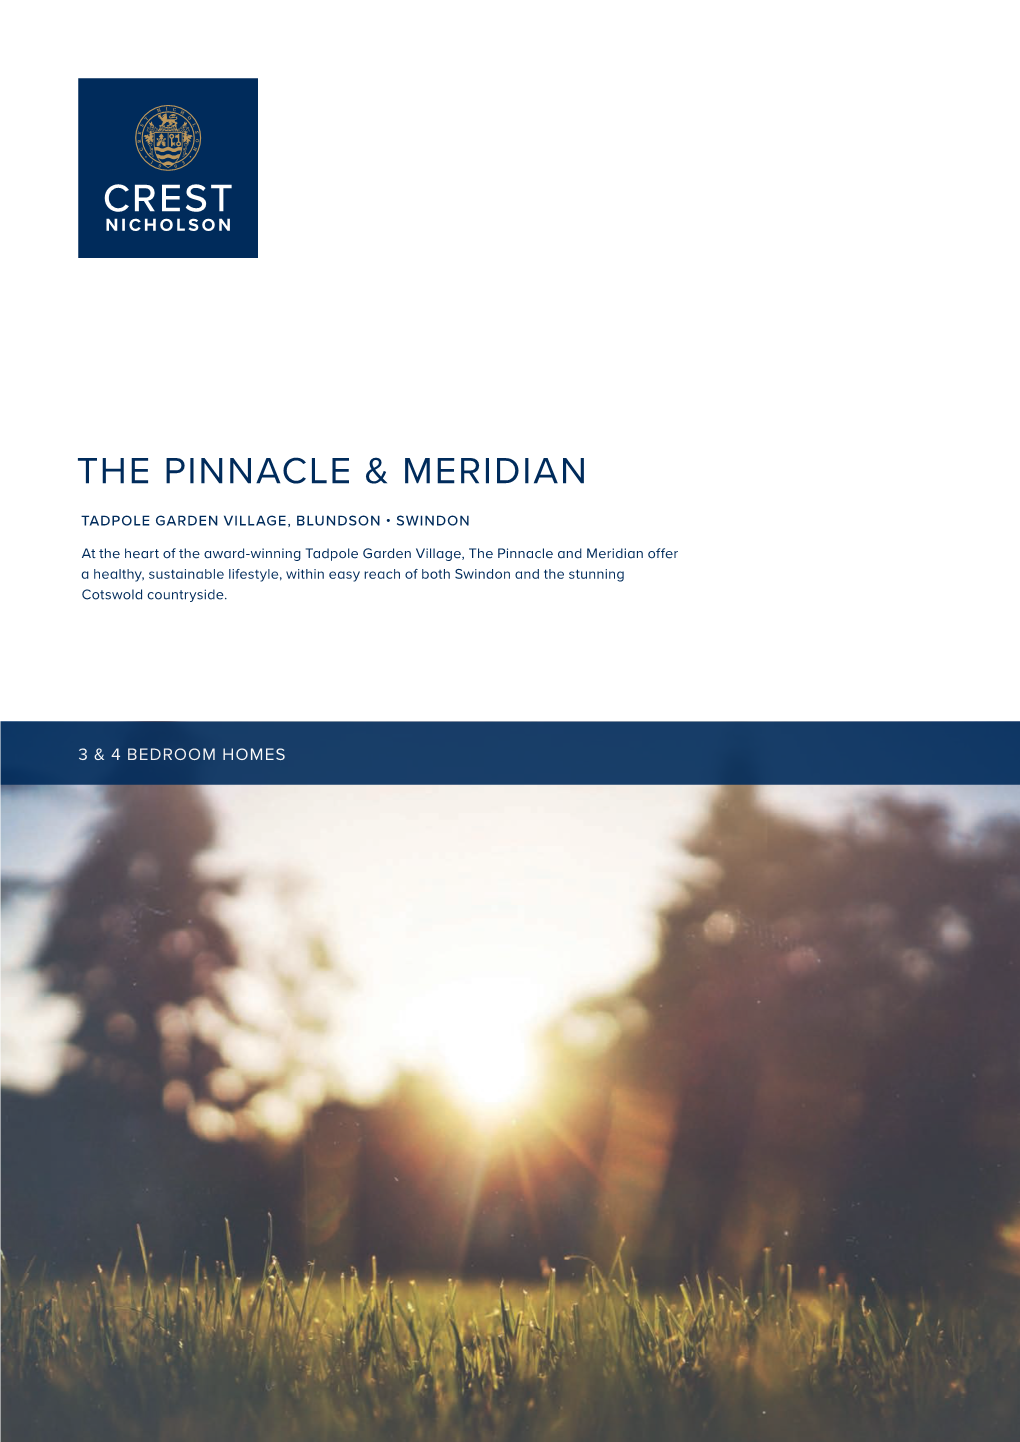 The Pinnacle & Meridian